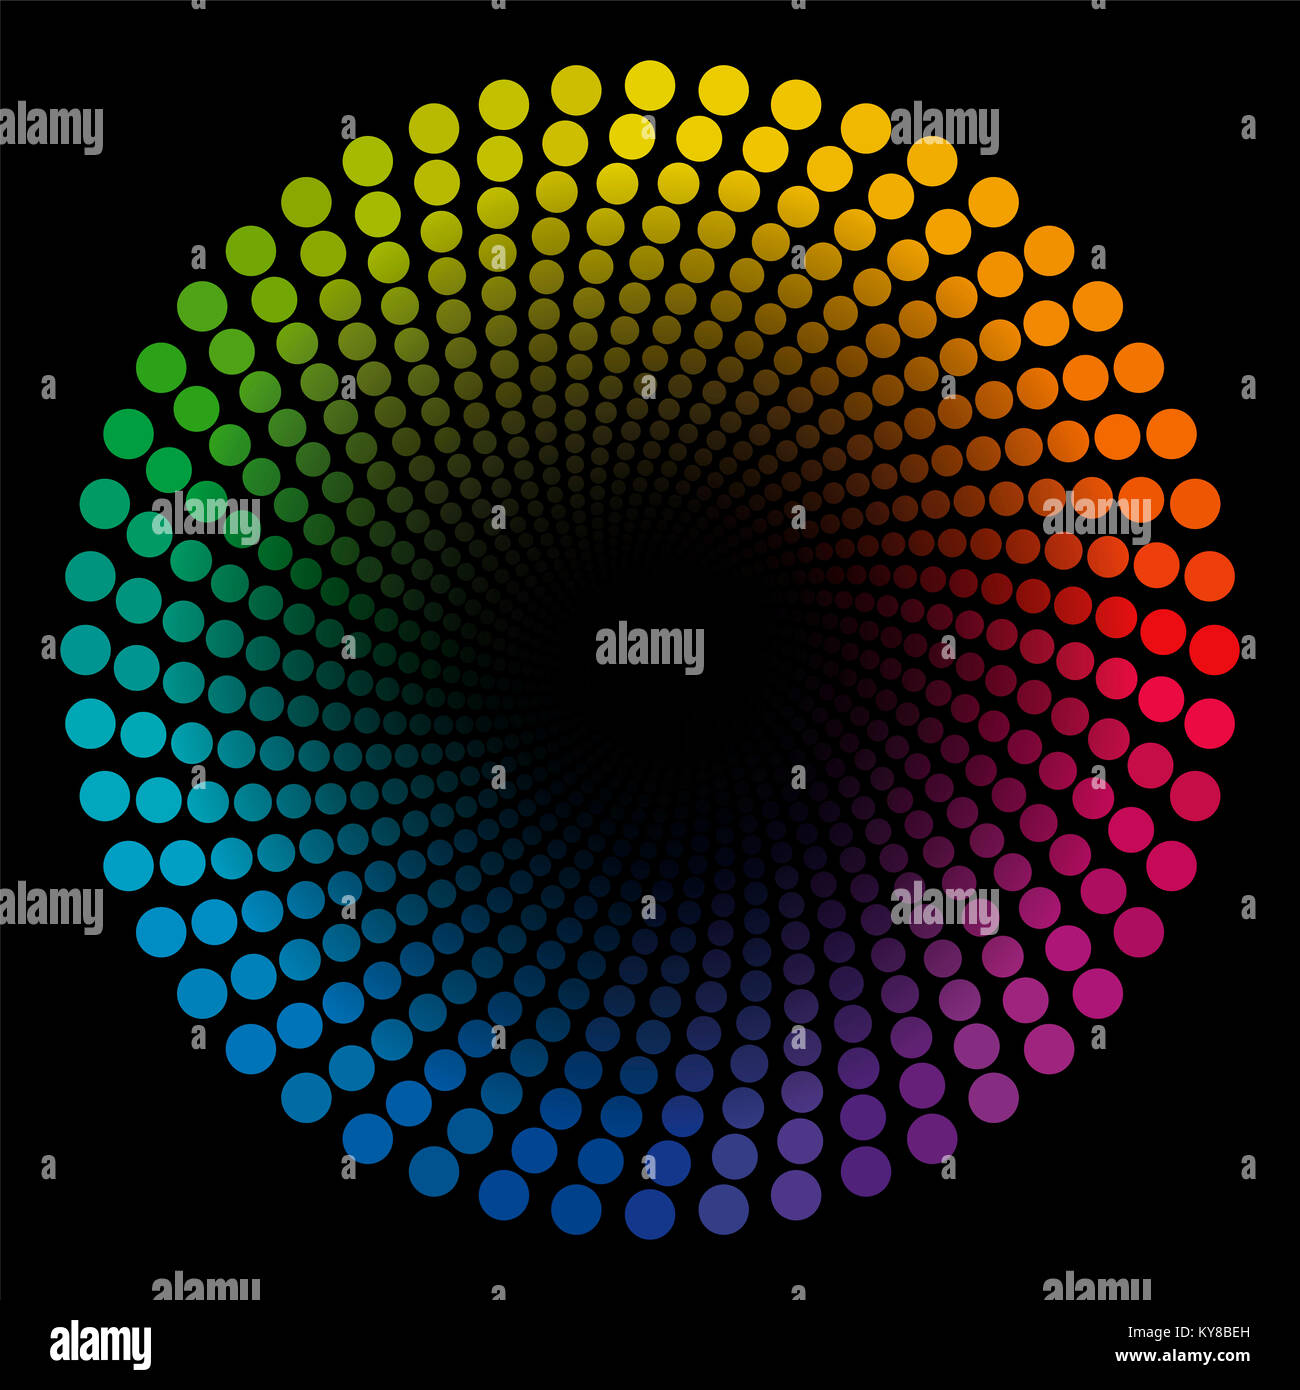 Espiral de color dots - tubo patrón geométrico de colores del arco iris circular trenzado ilustración con centro negro que parece ampliar - ilusión óptica. Foto de stock